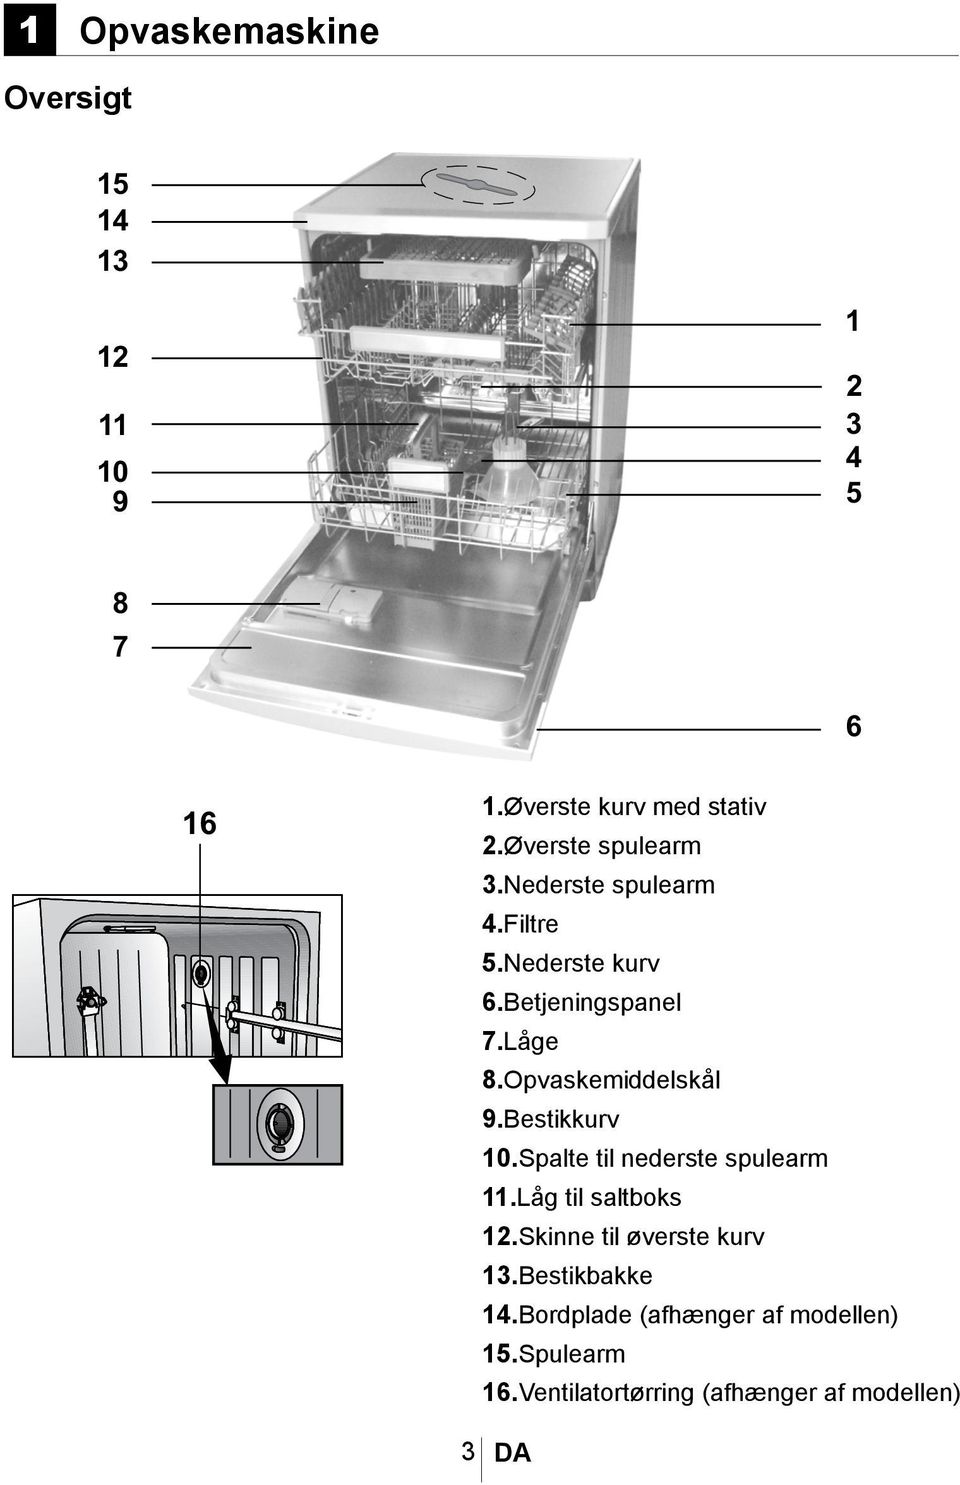 Opvaskemaskine. Brugsvejledning - PDF Free Download